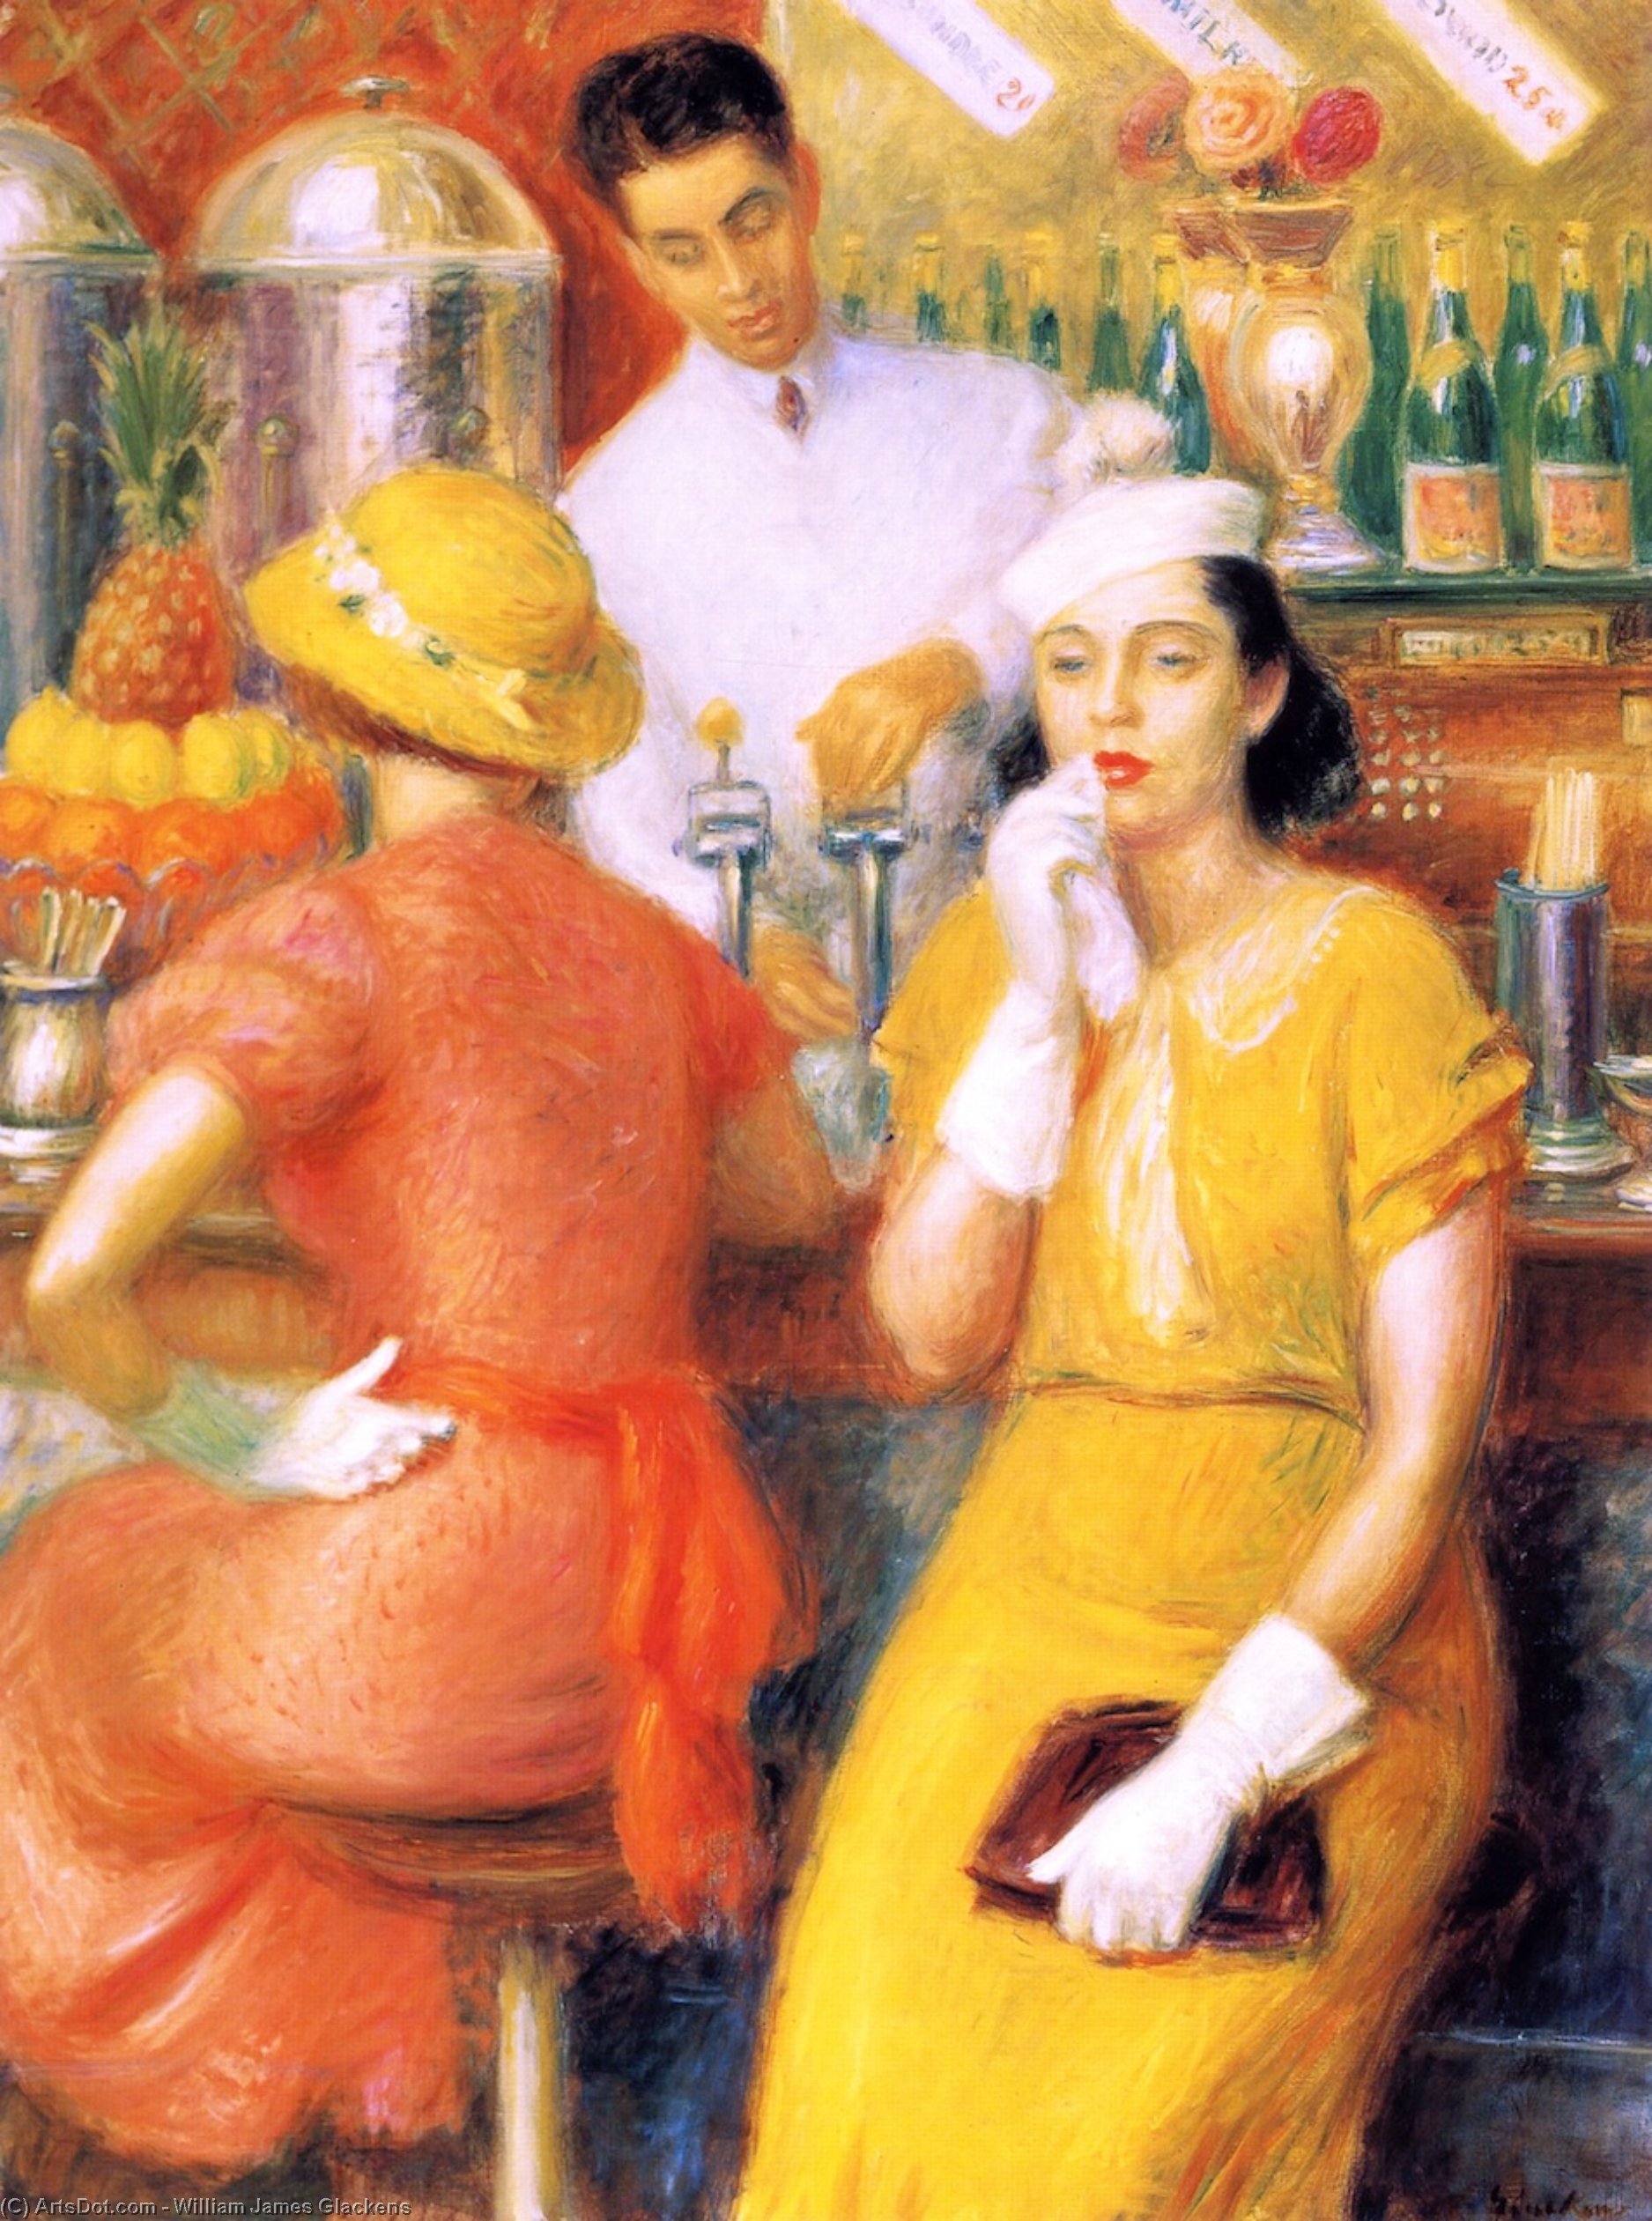 Ordinare Stampe Di Qualità Del Museo La Fontana di Soda, 1935 di William James Glackens (1870-1938, United States) | ArtsDot.com